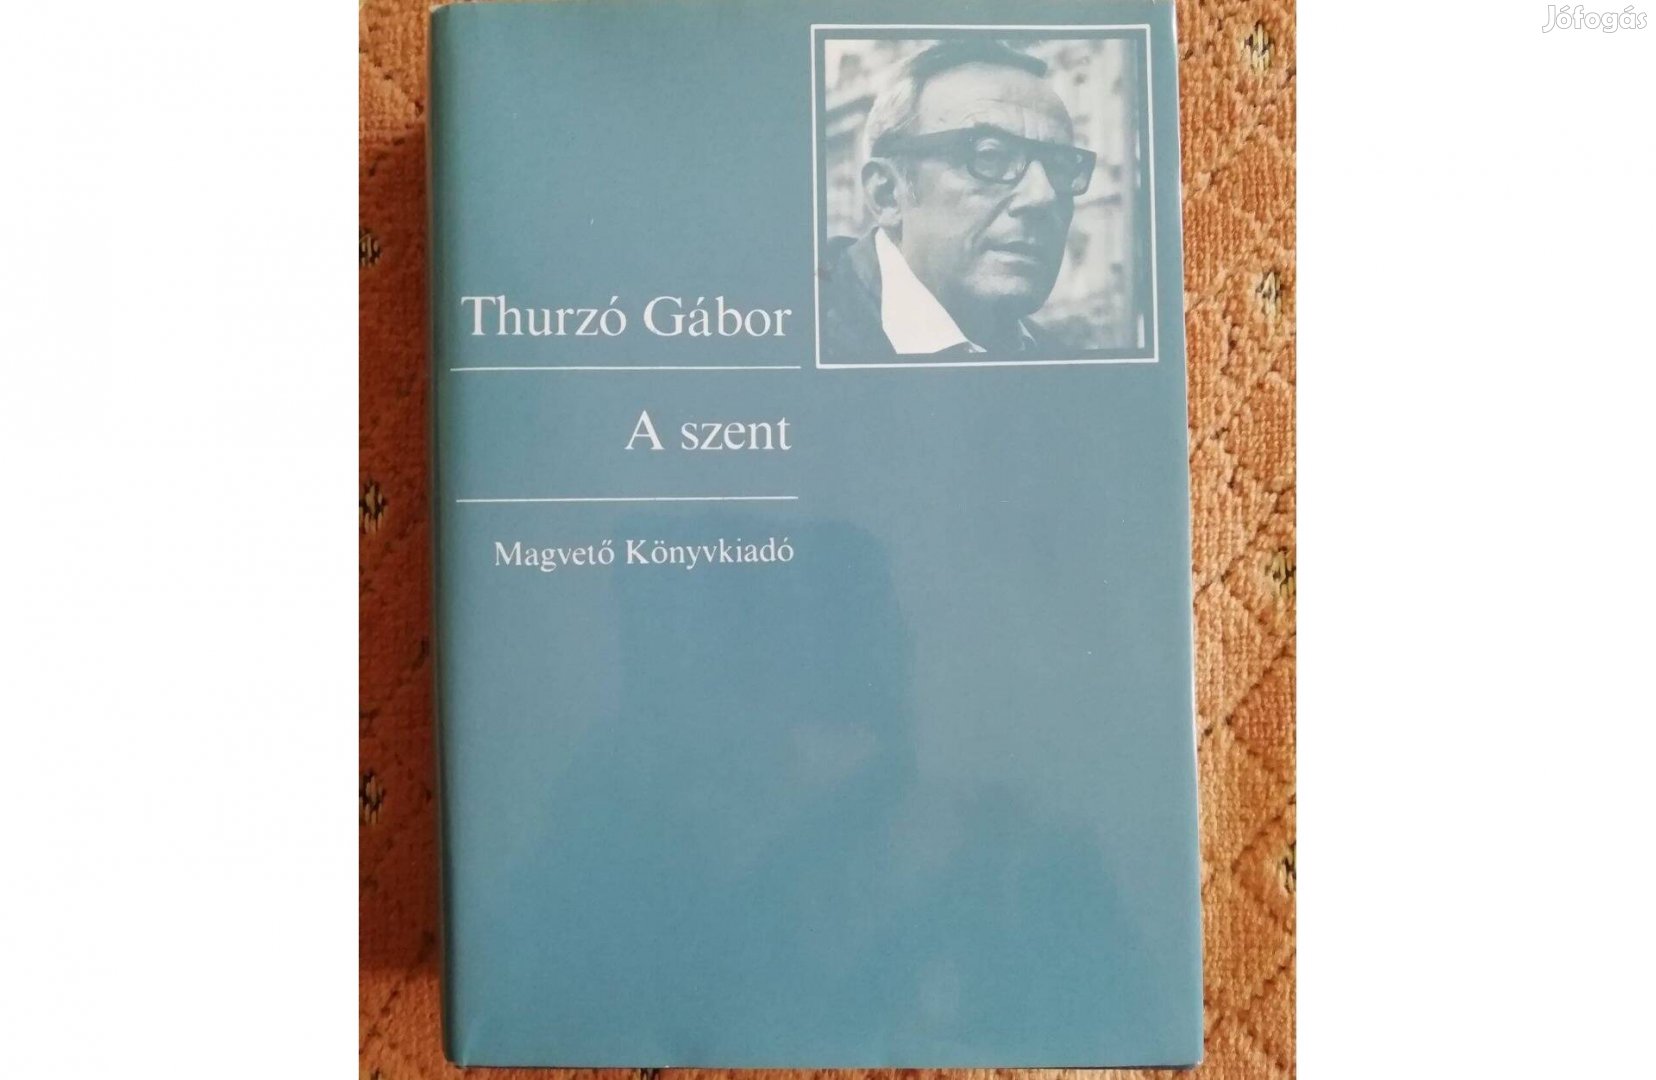 Thurzó Gábor: A szent (1983) 535 oldal